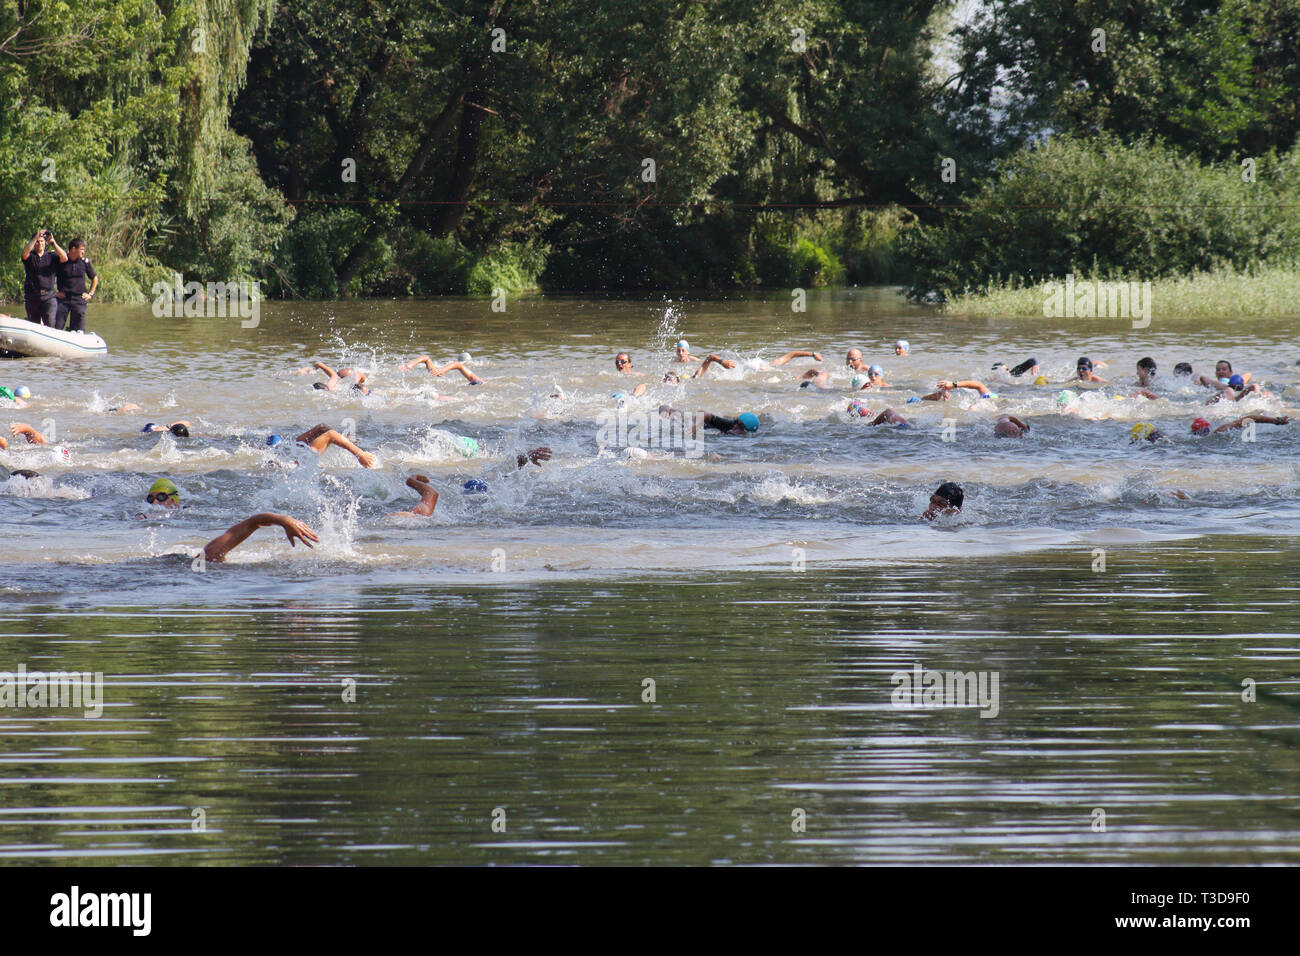 Gruppo di triathlonists nuotare nel fiume Mures durante il concorso nazionale Foto Stock